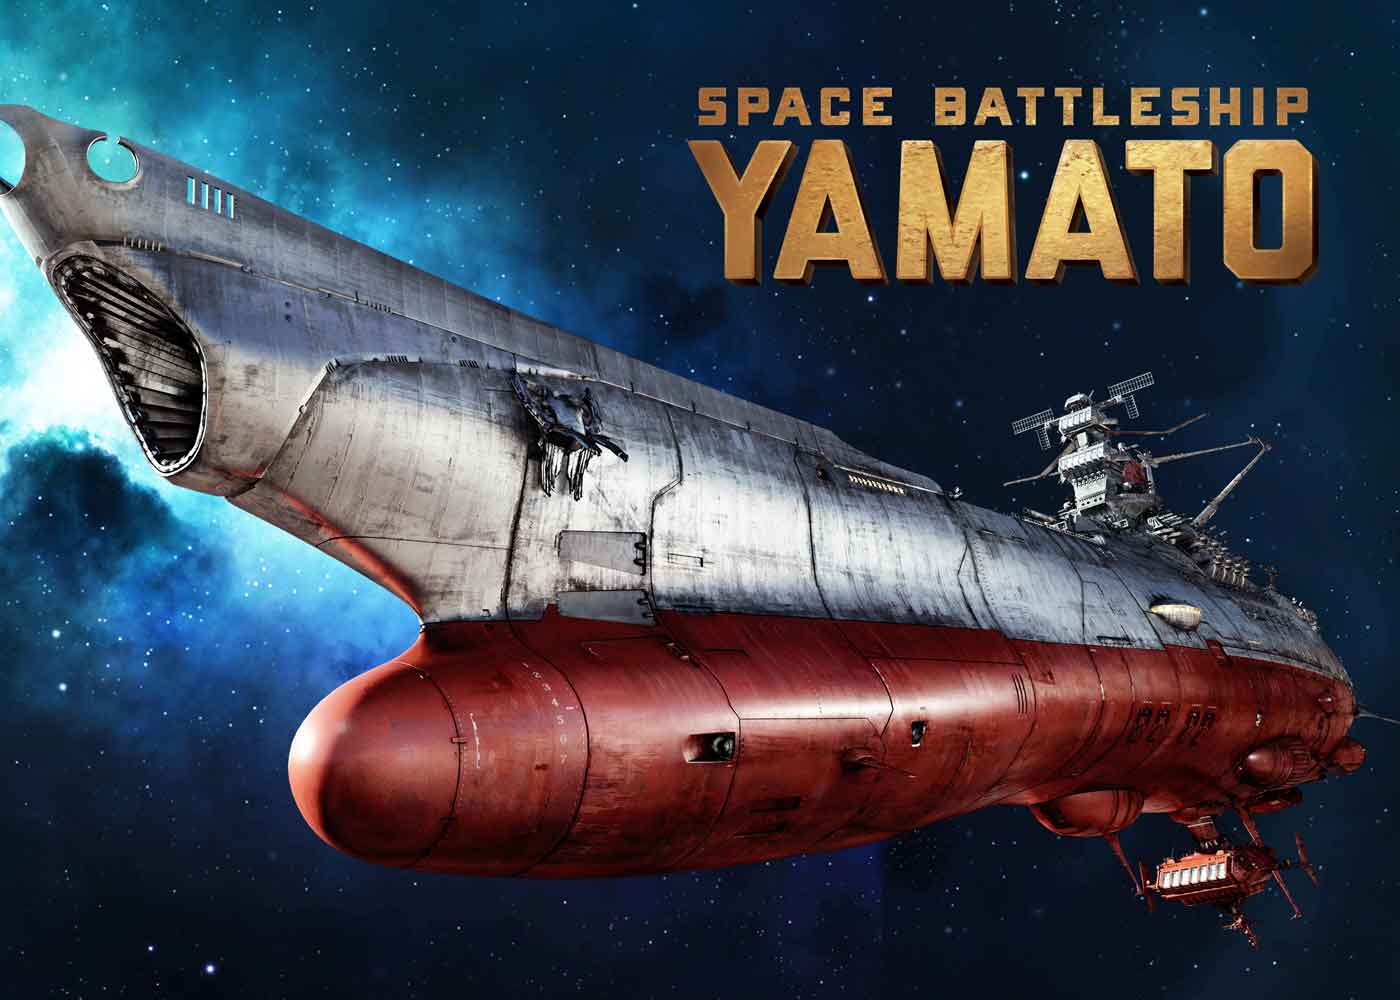 Space Battleship Yamato 2202 Rilis Trailer Full Action